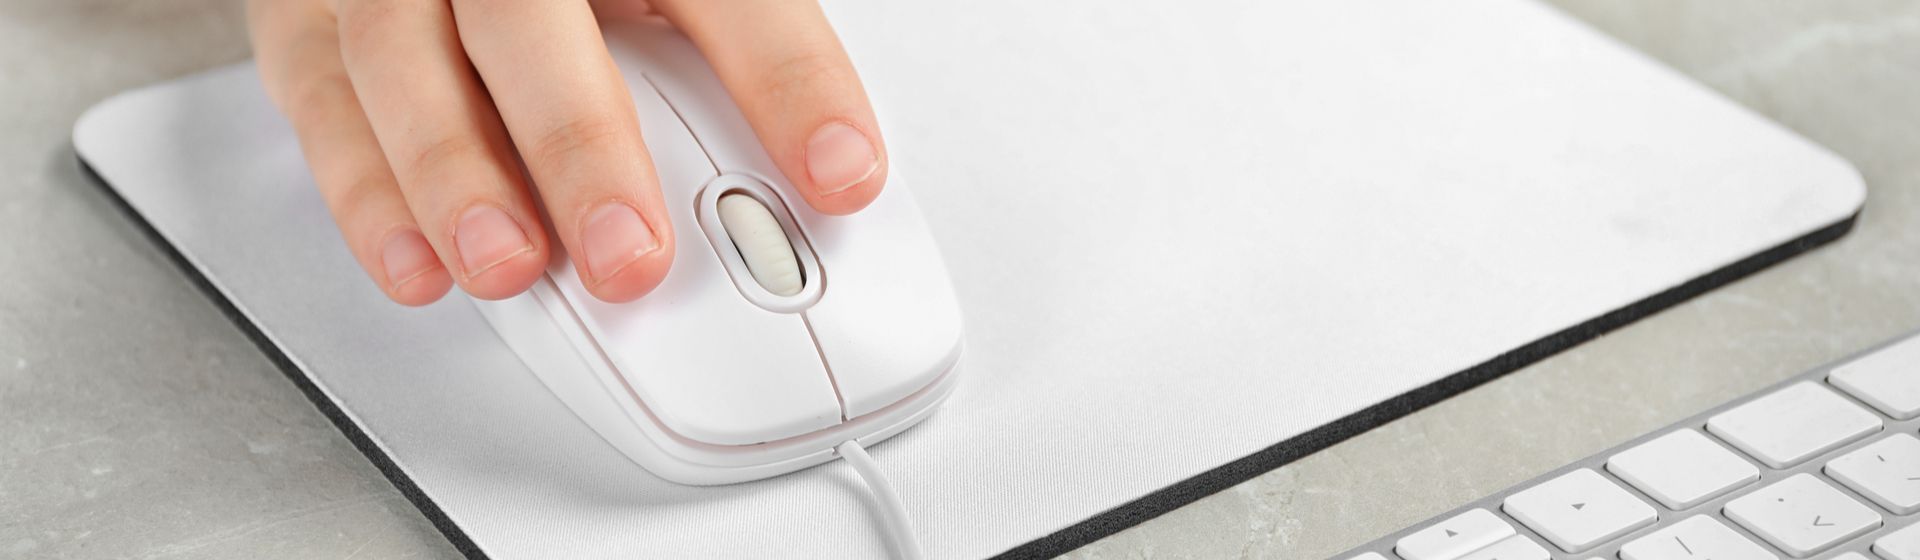 Melhor mouse pad de 2021: 10 modelos para comprar